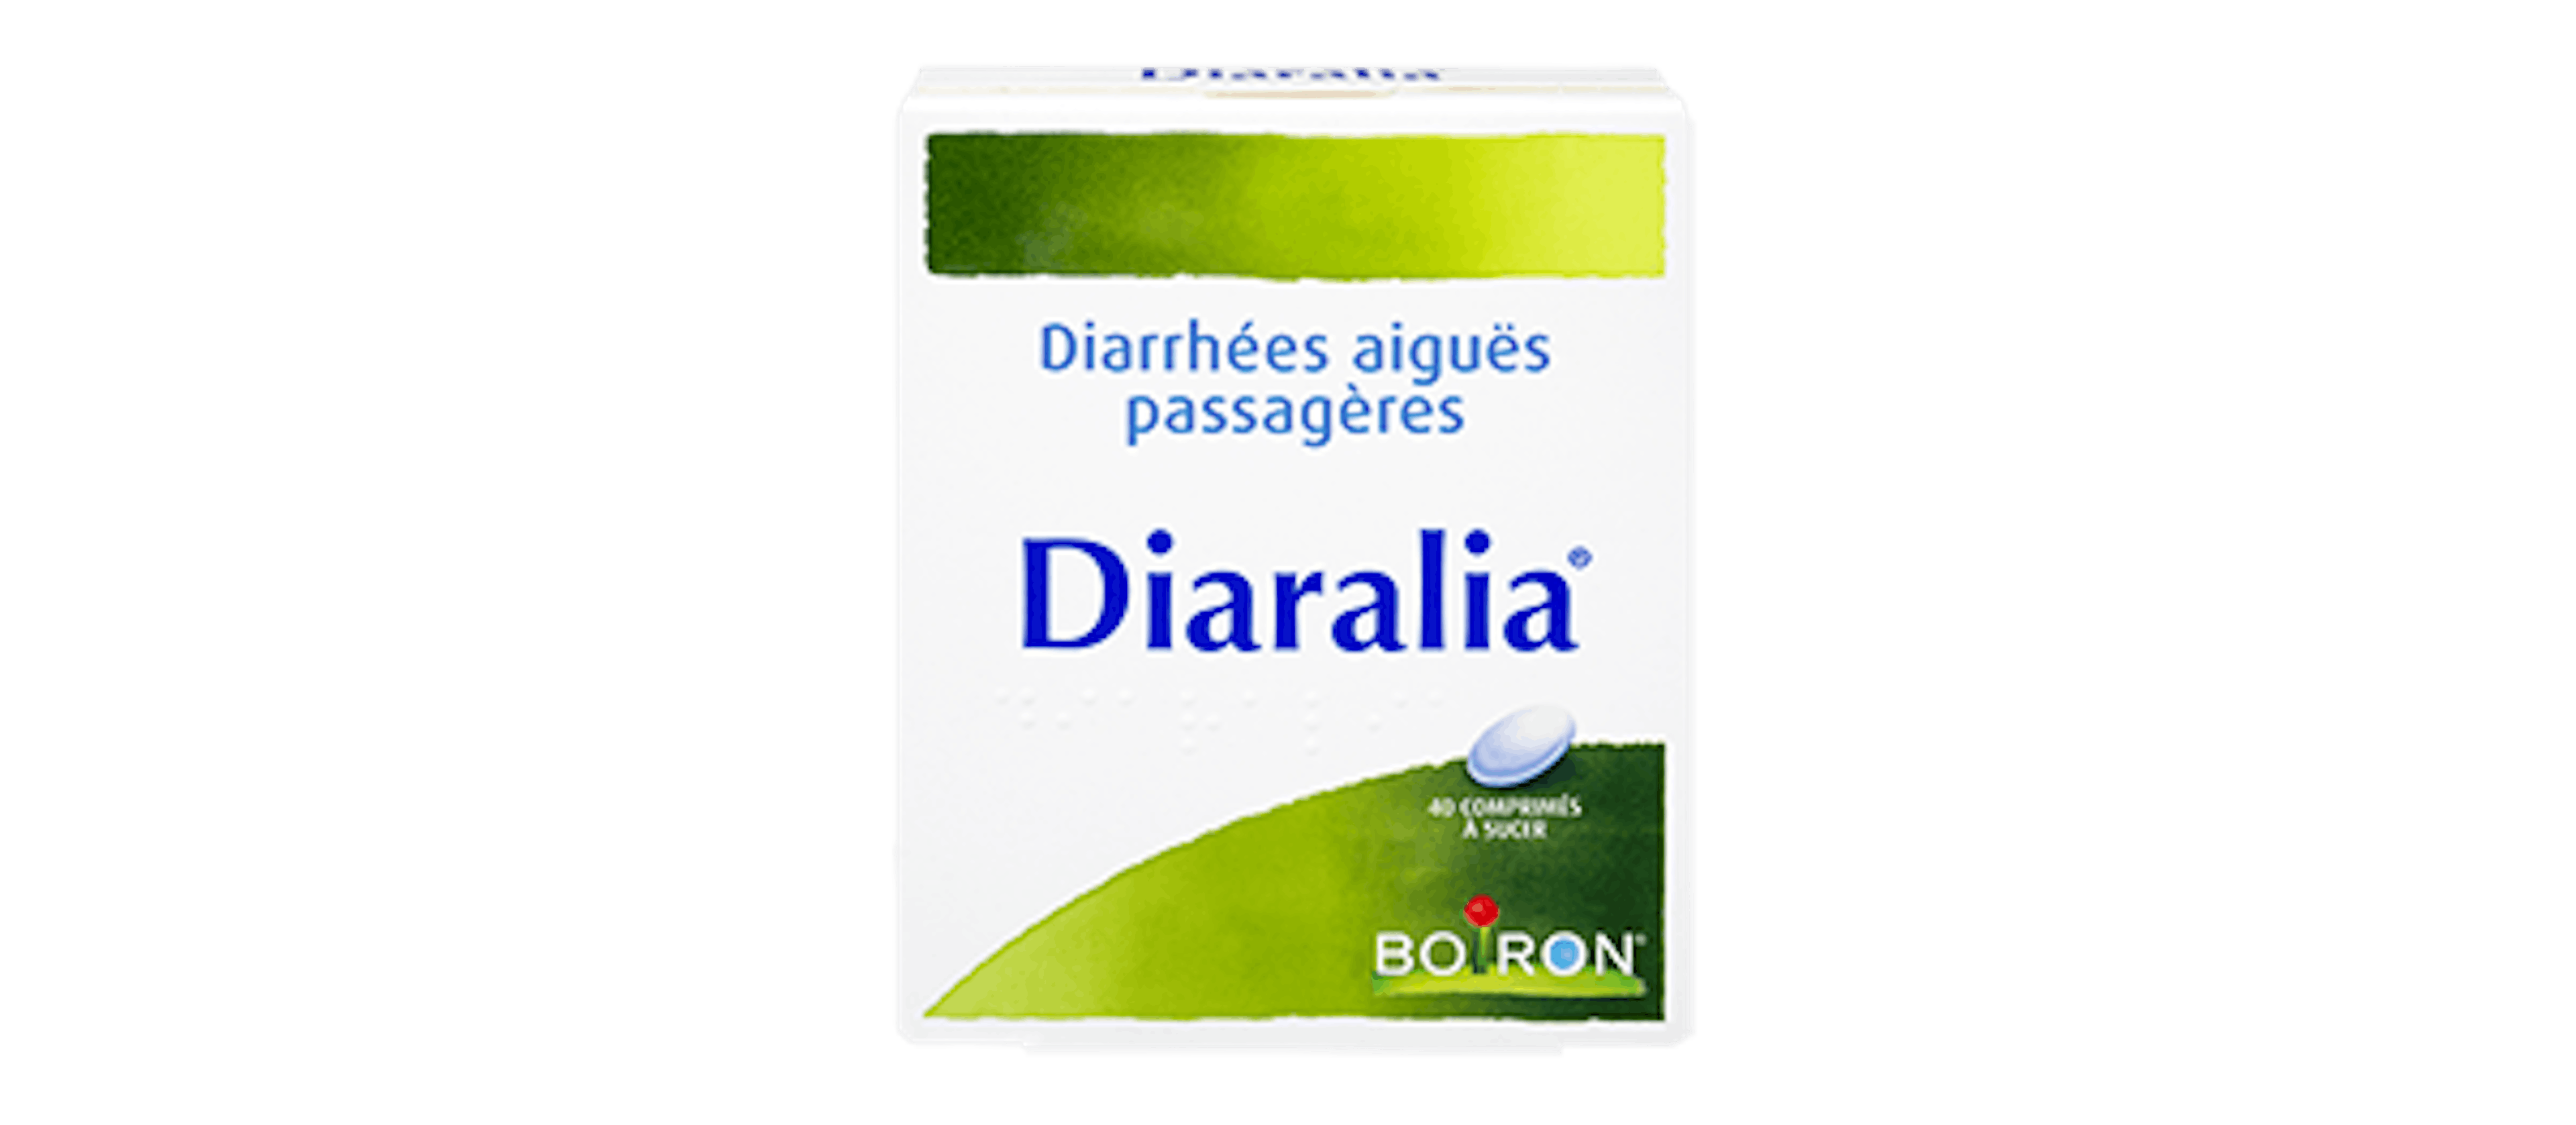 Diaralia®